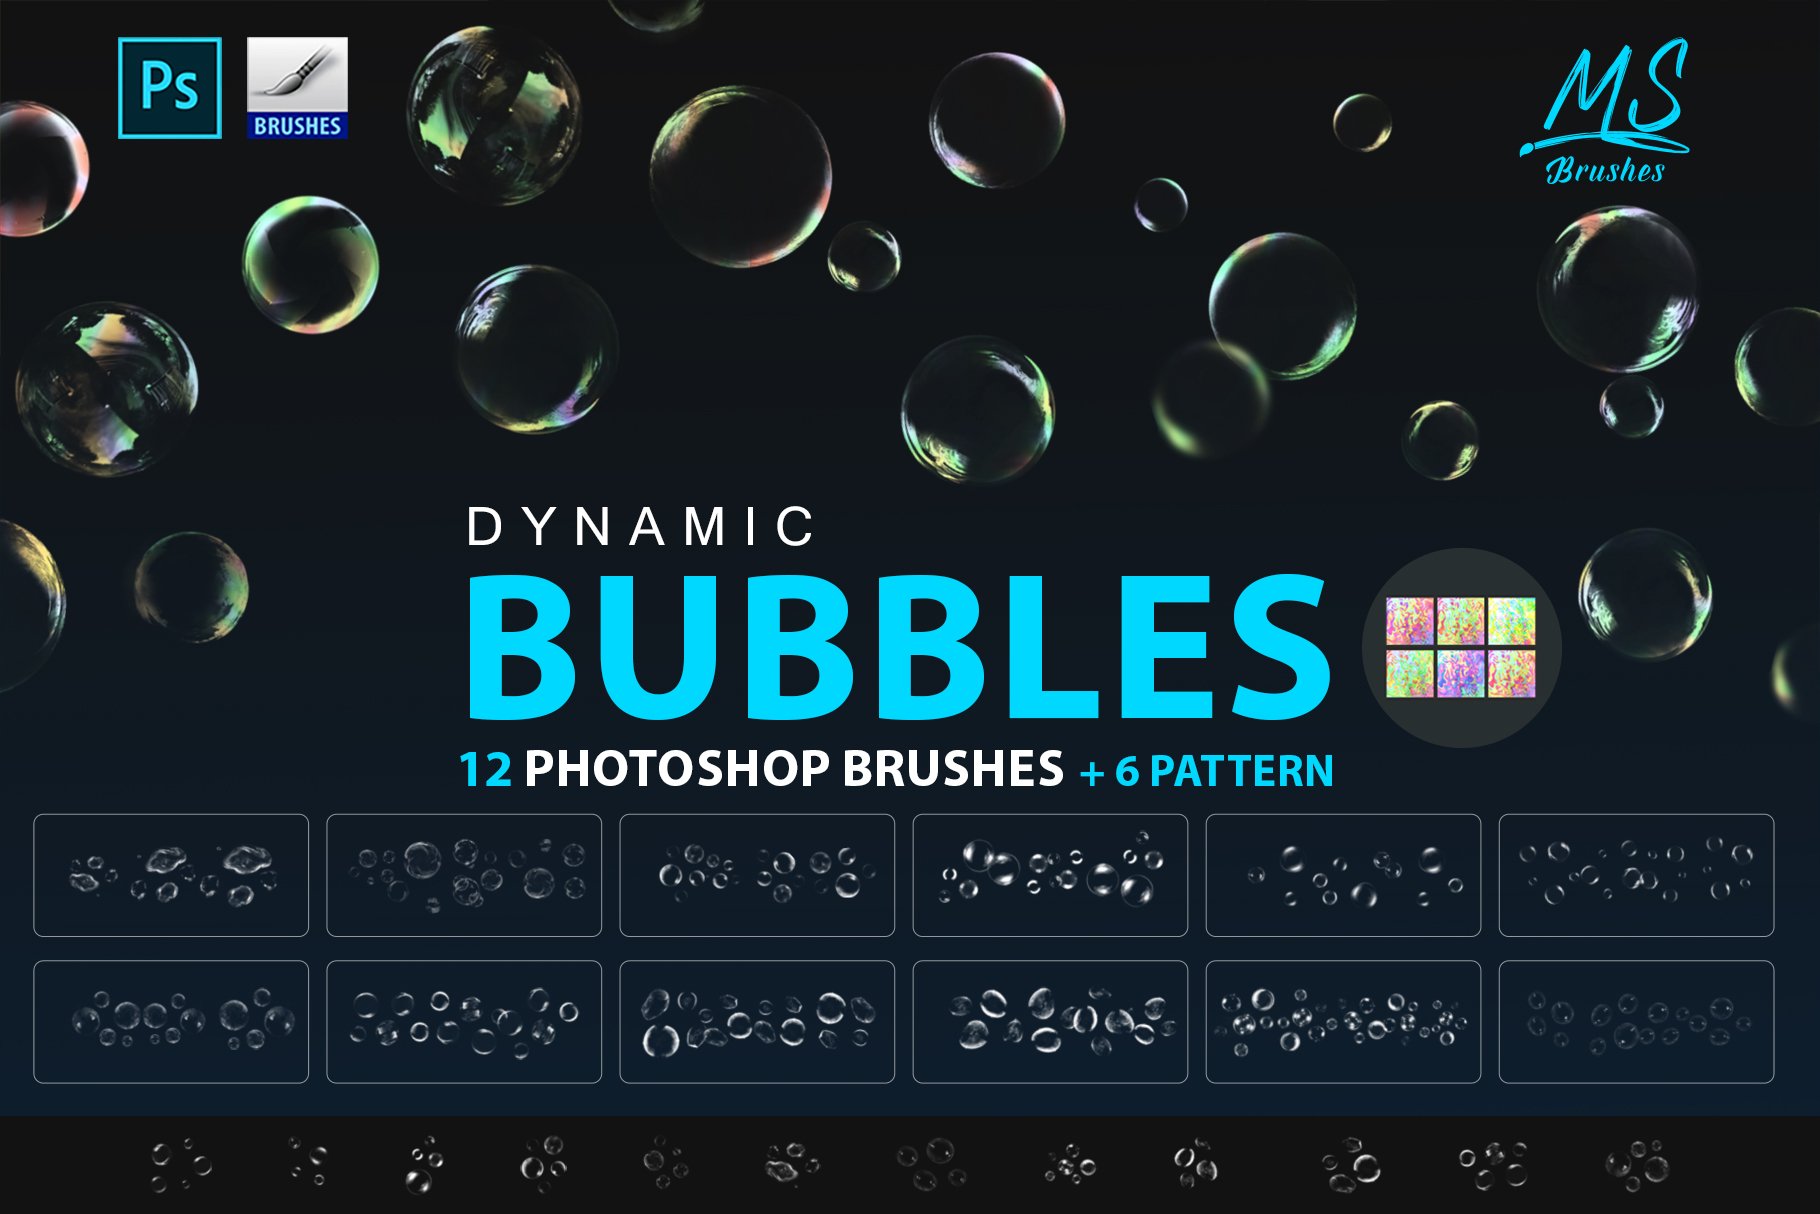 Bubbles Photoshop Brushescover image.